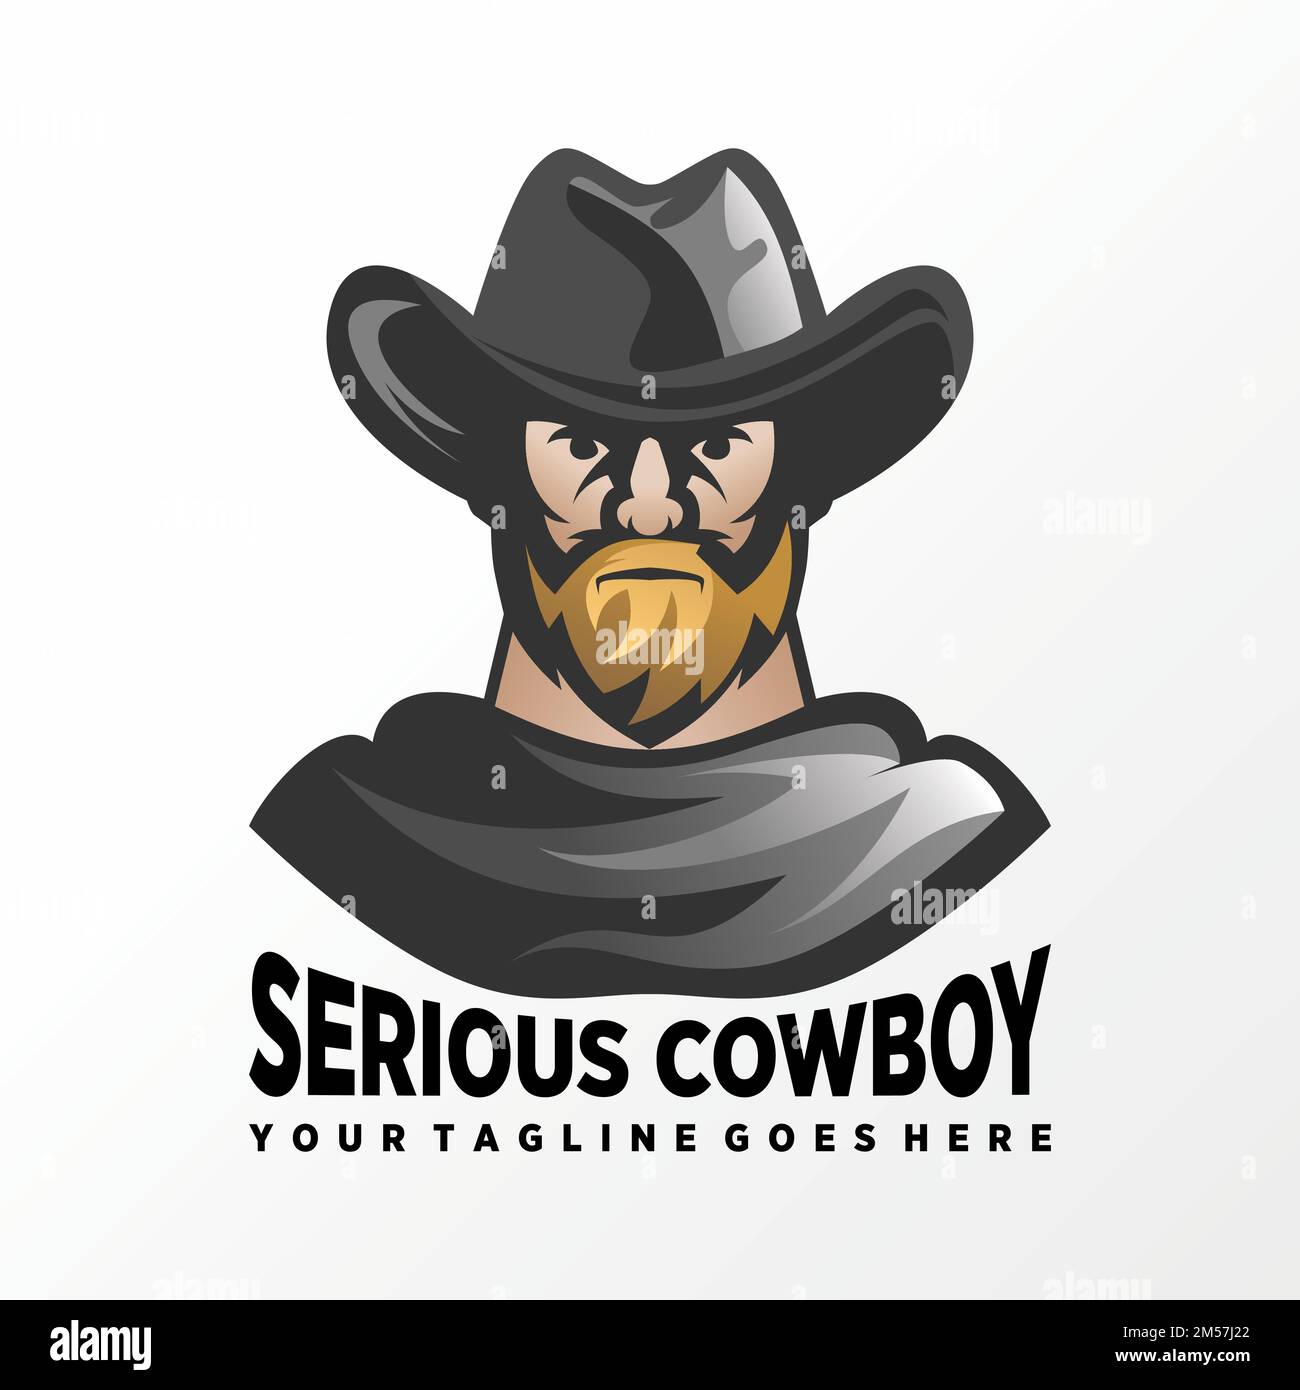 Unico cowboy serio usando cappello e vestire immagine grafica icona logo disegno astratto concetto vettore stock. simbolo associato a un eroe o a un personaggio. Illustrazione Vettoriale